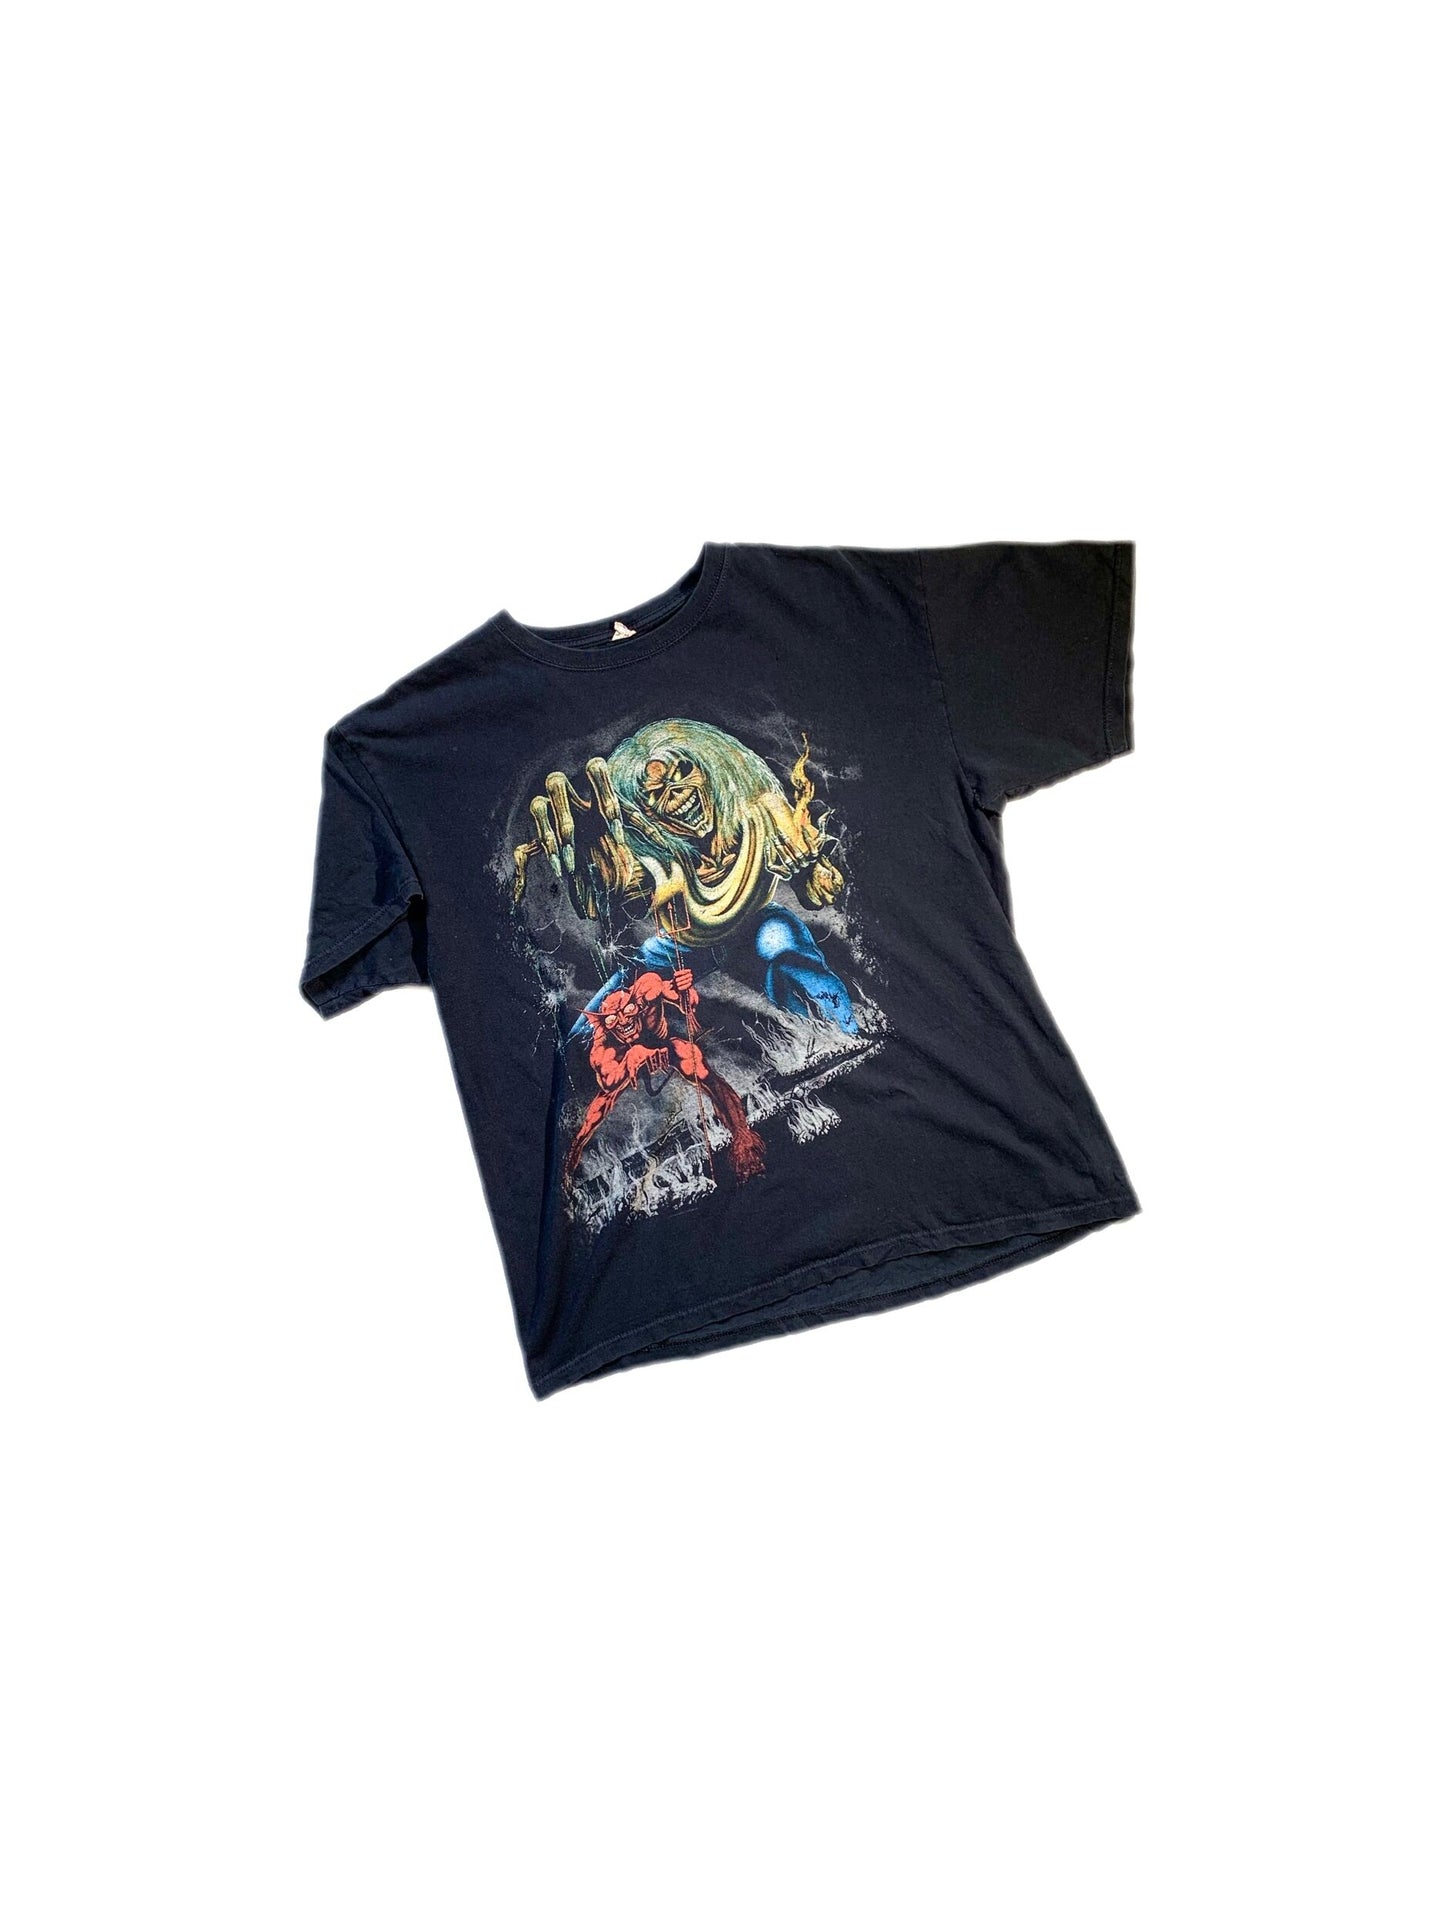 Vintage Iron Maiden 2012 Tour T-Shirt